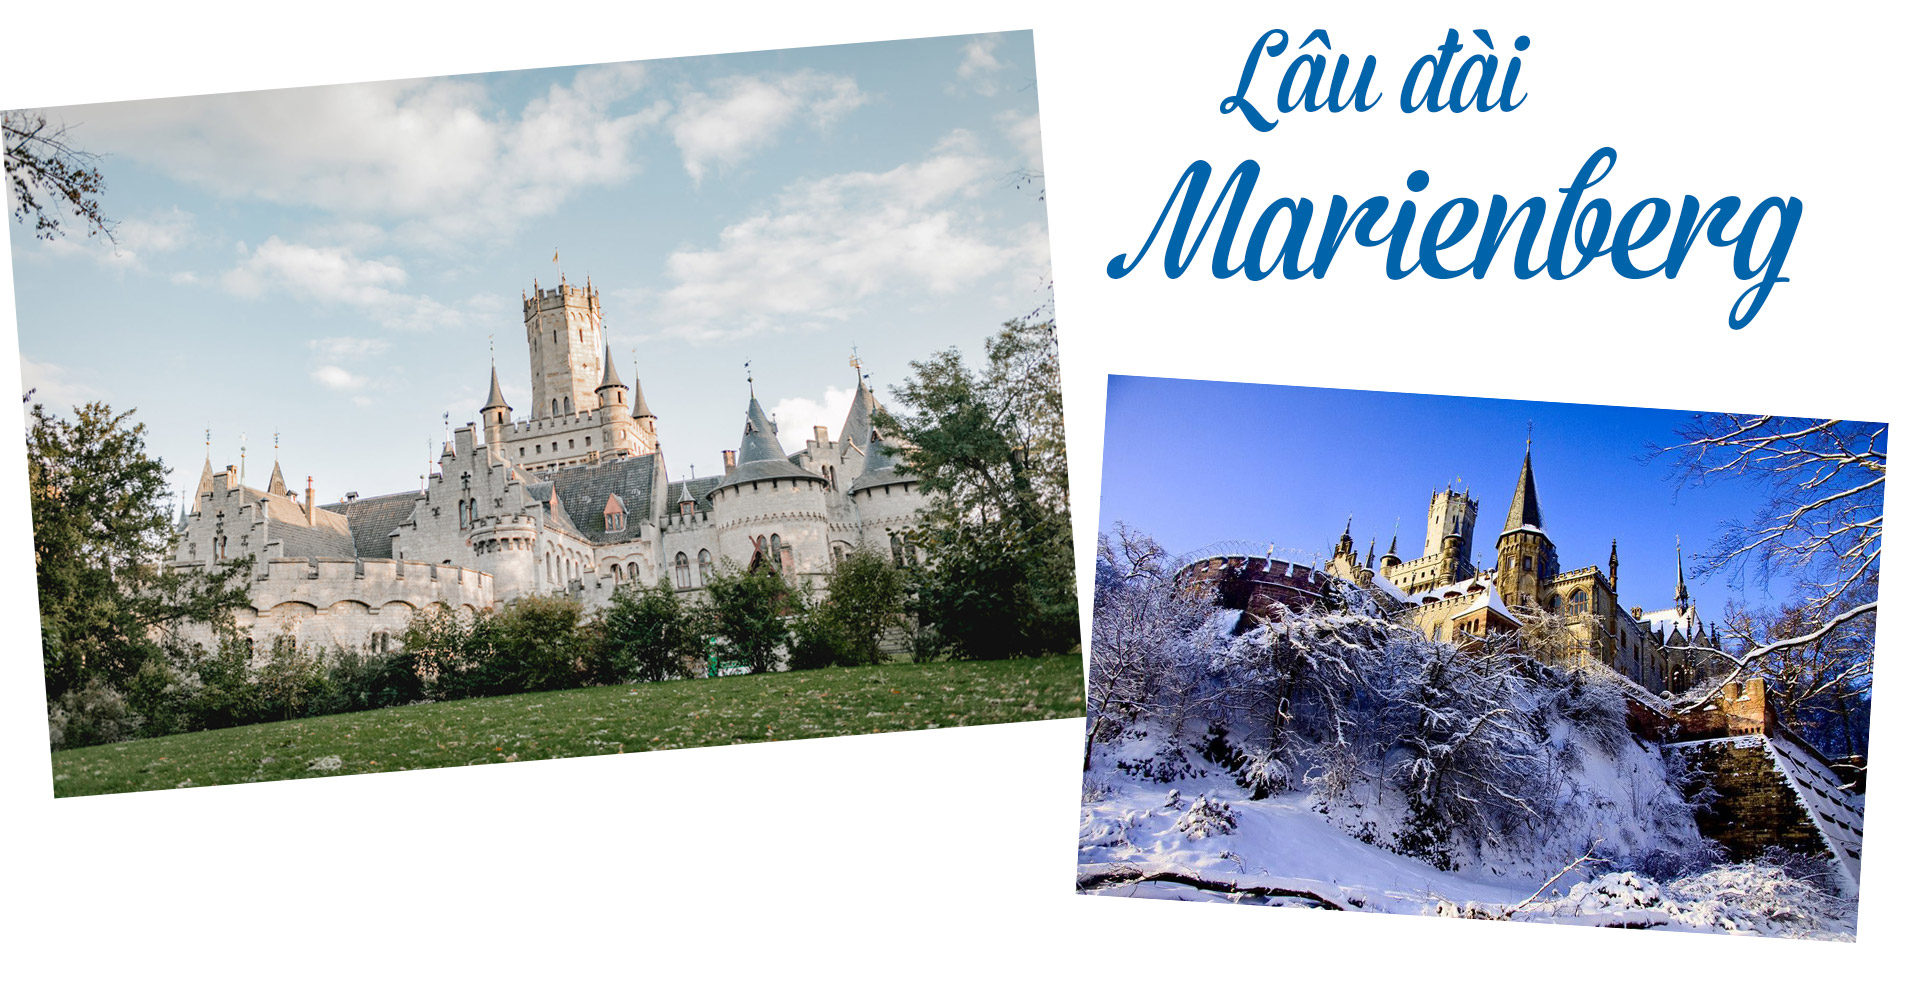 17 lâu đài cổ tích châu Âu đáng đến thăm vào mùa đông - 13